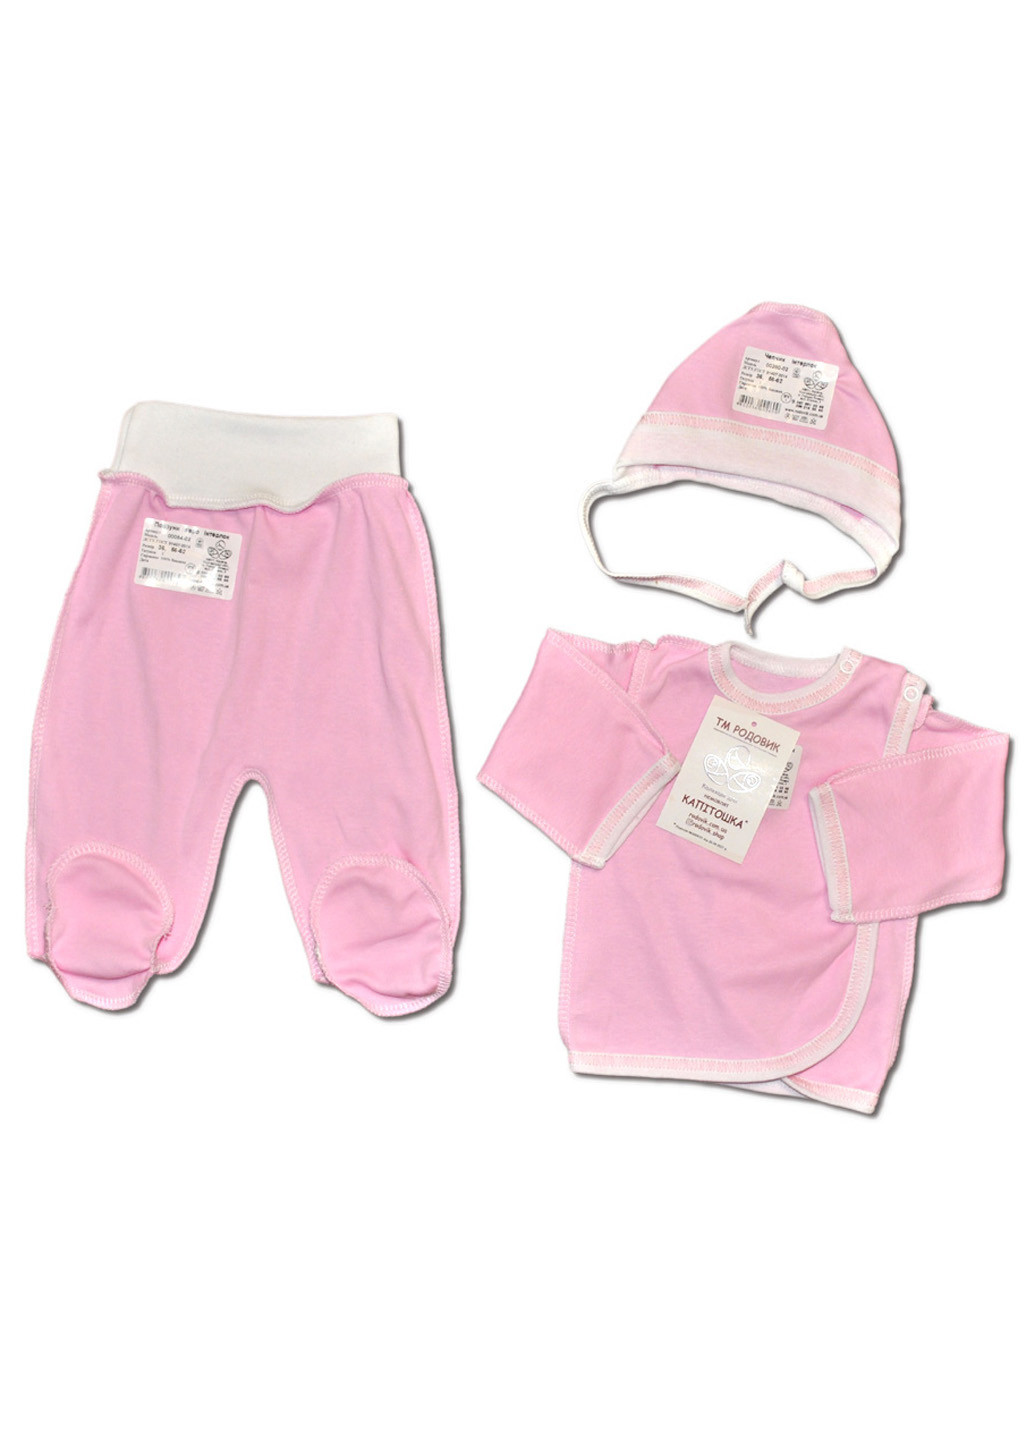 Розовый демисезонный костюм для новорожденных №2 (3 предмета) тм коллекция капитошка розовый тройка Родовик костюм 02-Р-2